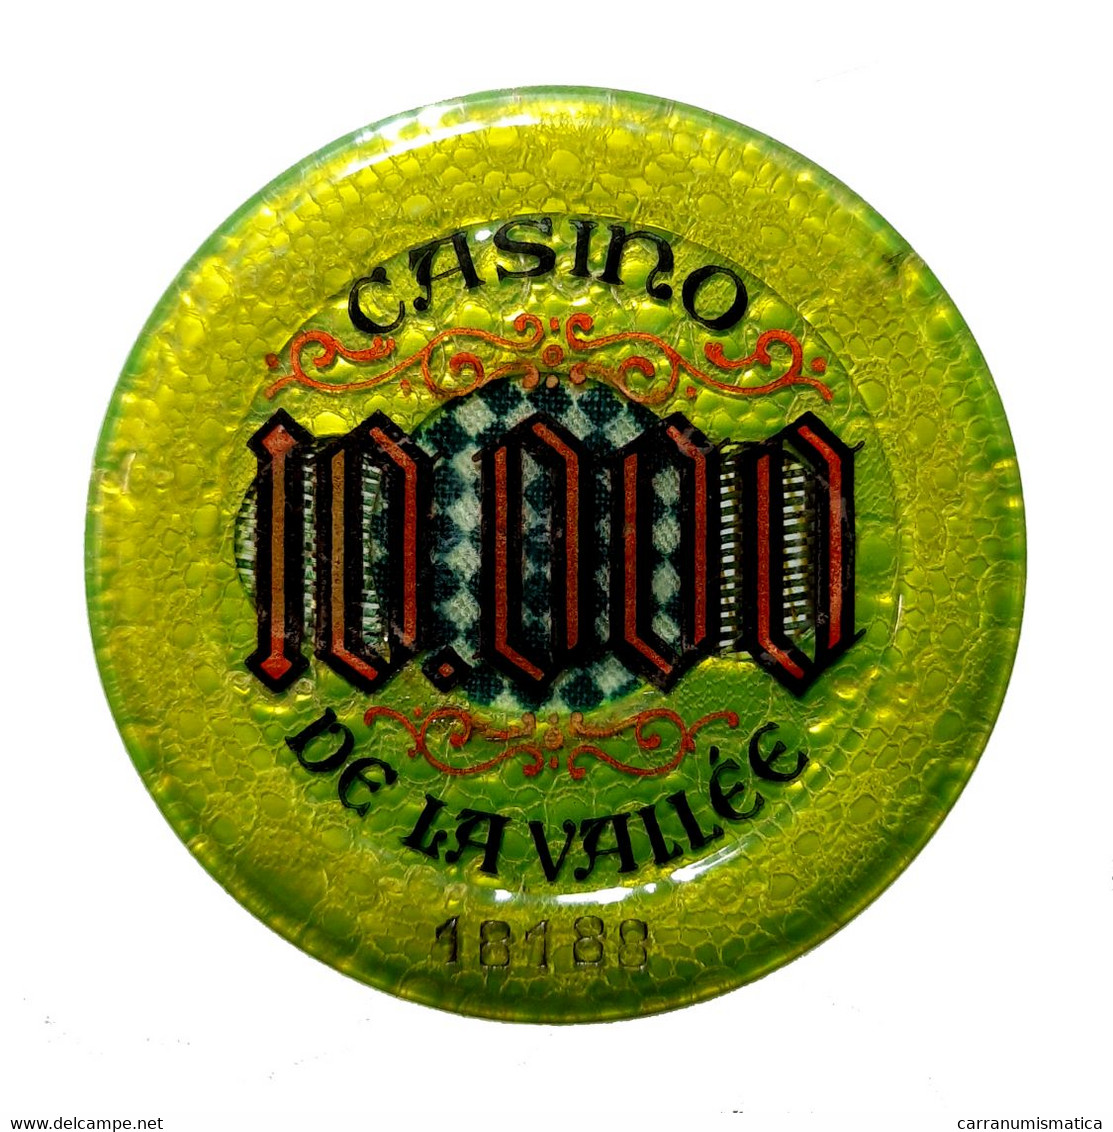 [NC] SAINT VINCENT (AOSTA) - Casinò De La Vallée - CHIP / FICHE / TOKEN Da 10000 - Casino